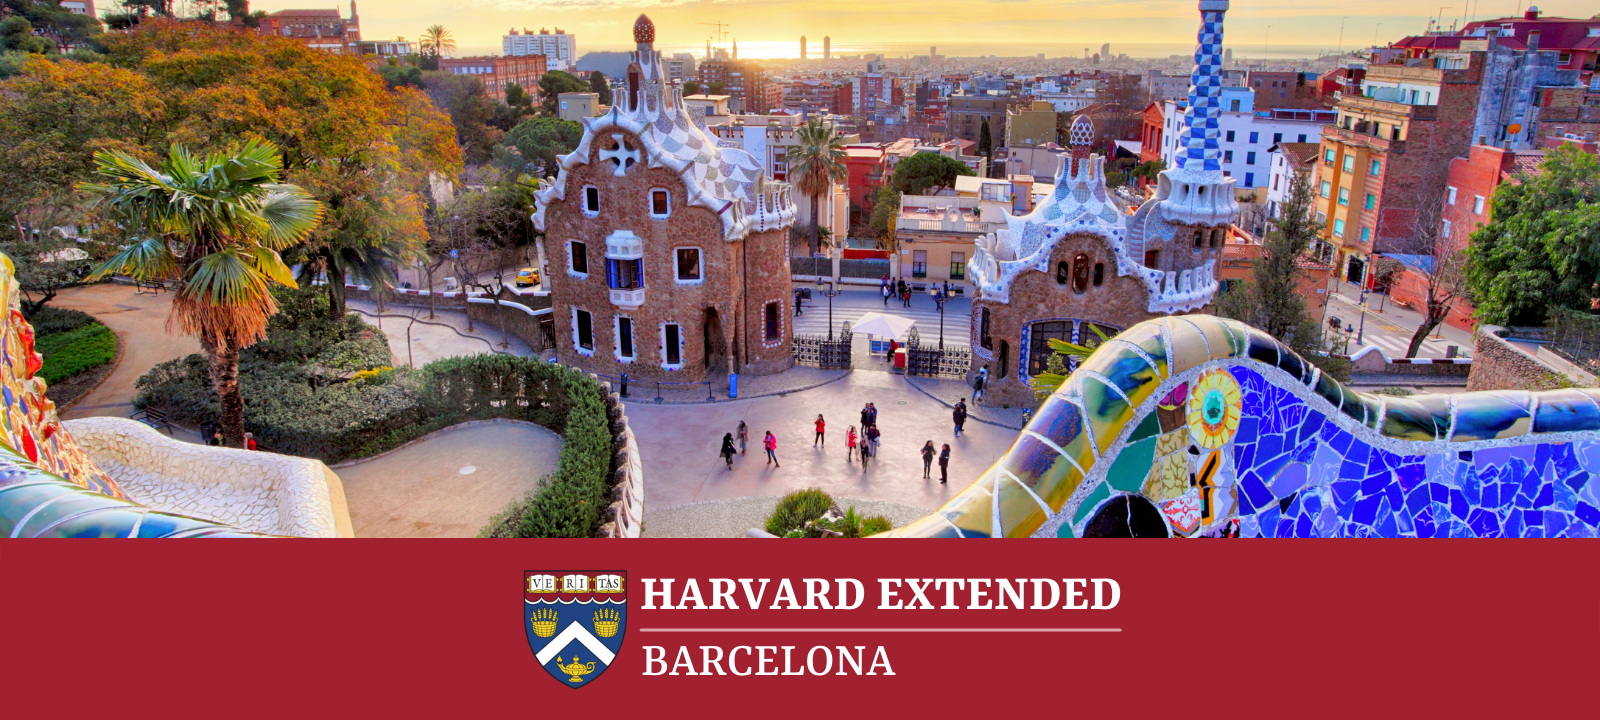 Harvard Extended Barcelona